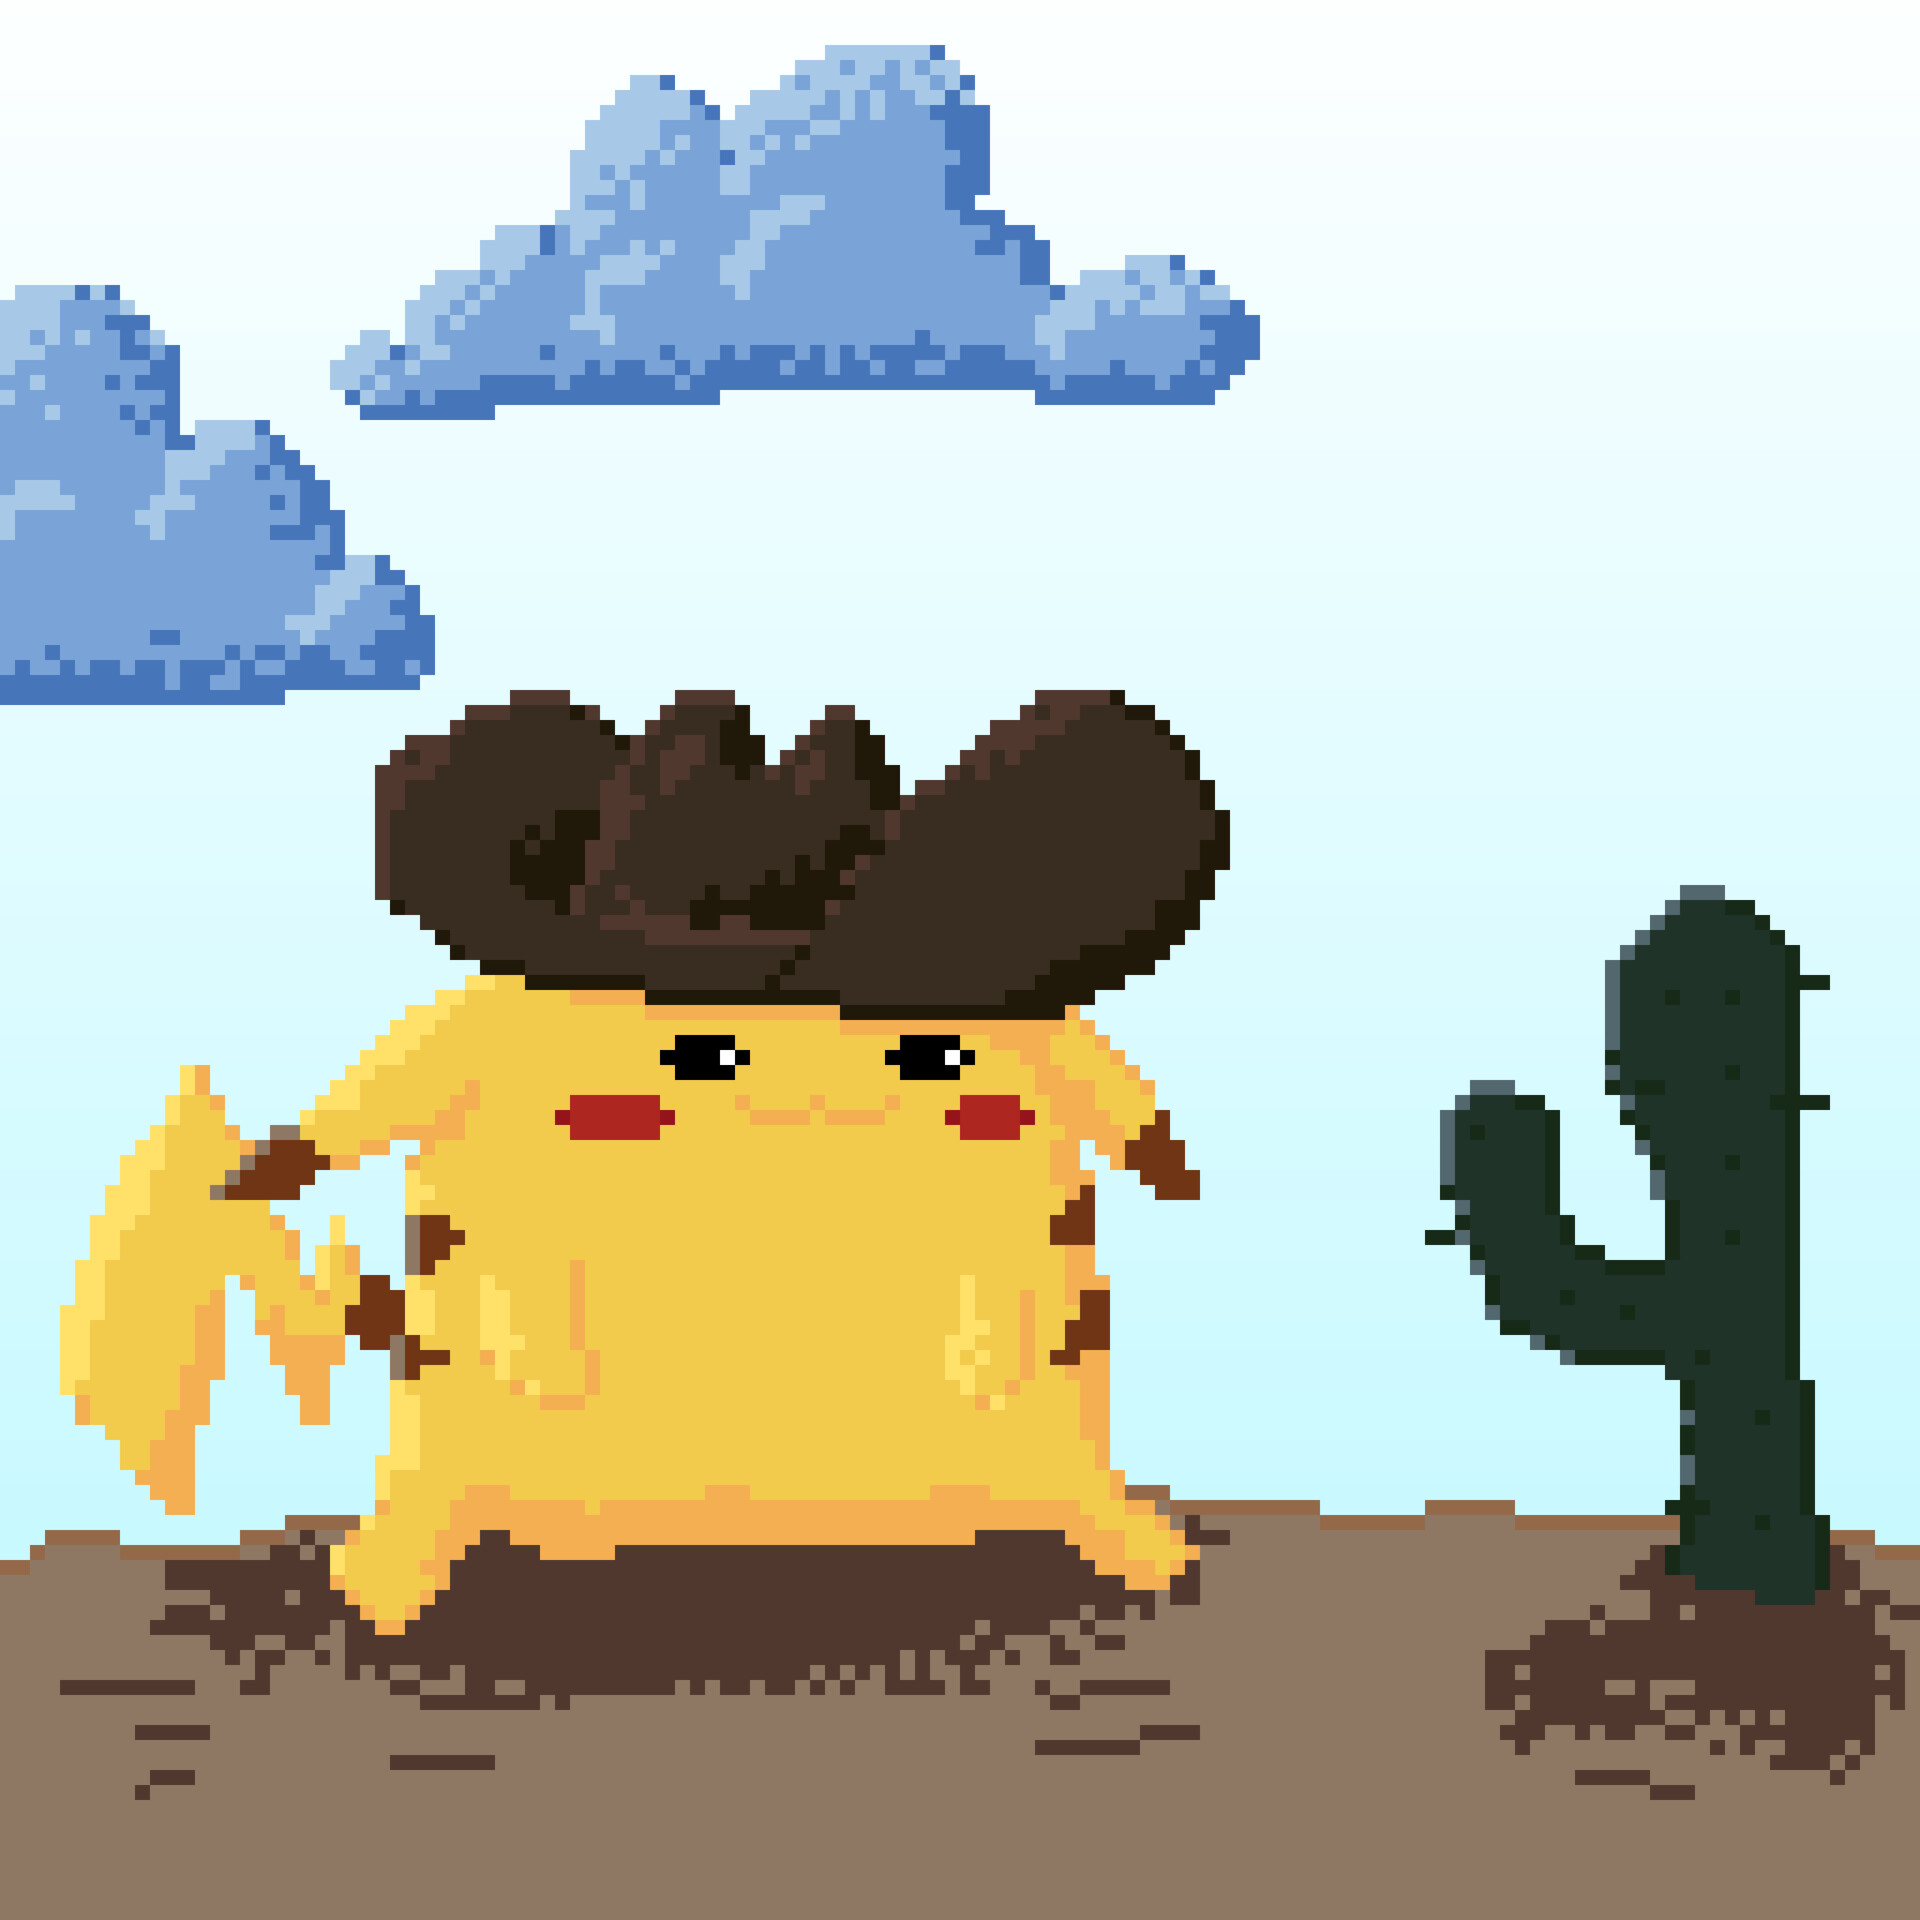 derpy pikachu - clud pixel art